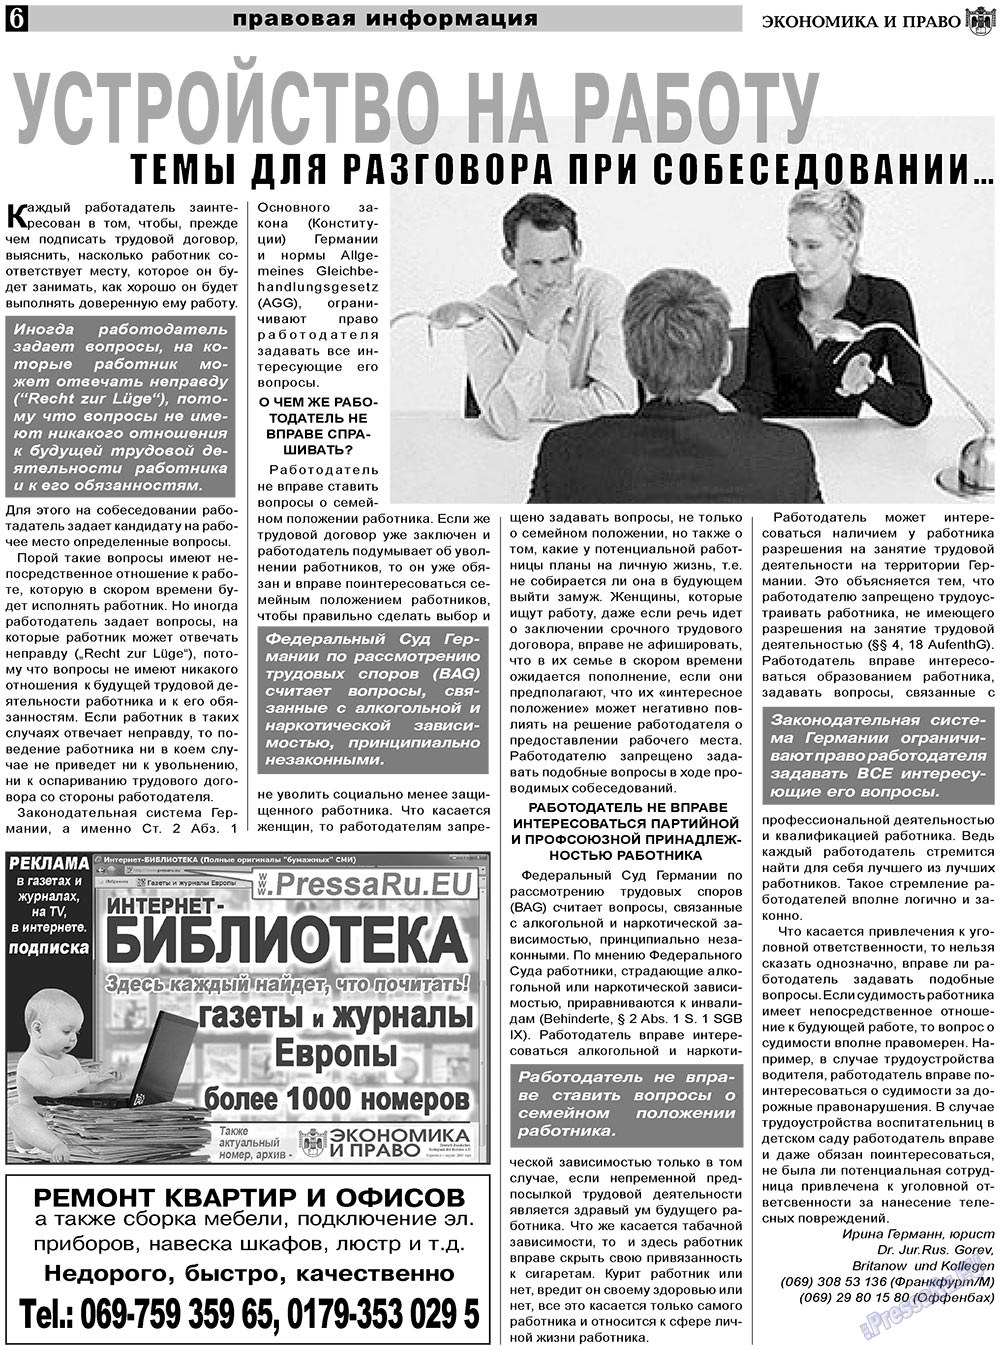 Экономика и право, газета. 2011 №4 стр.6